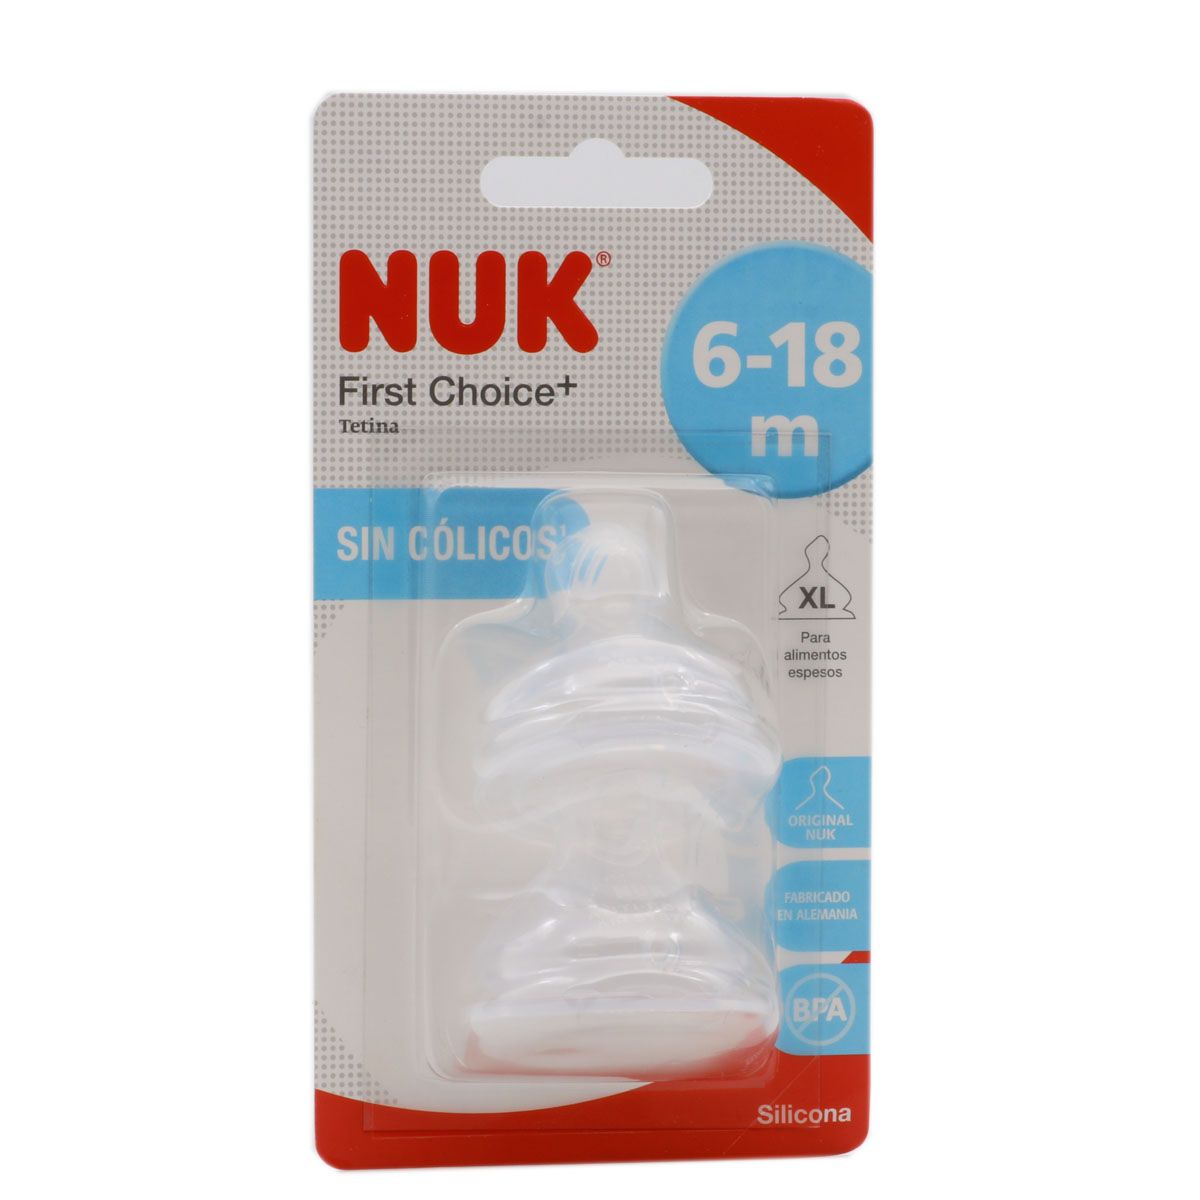 ▻ Nuk Tetina First Choice+ 6-18 M Tamaño XL